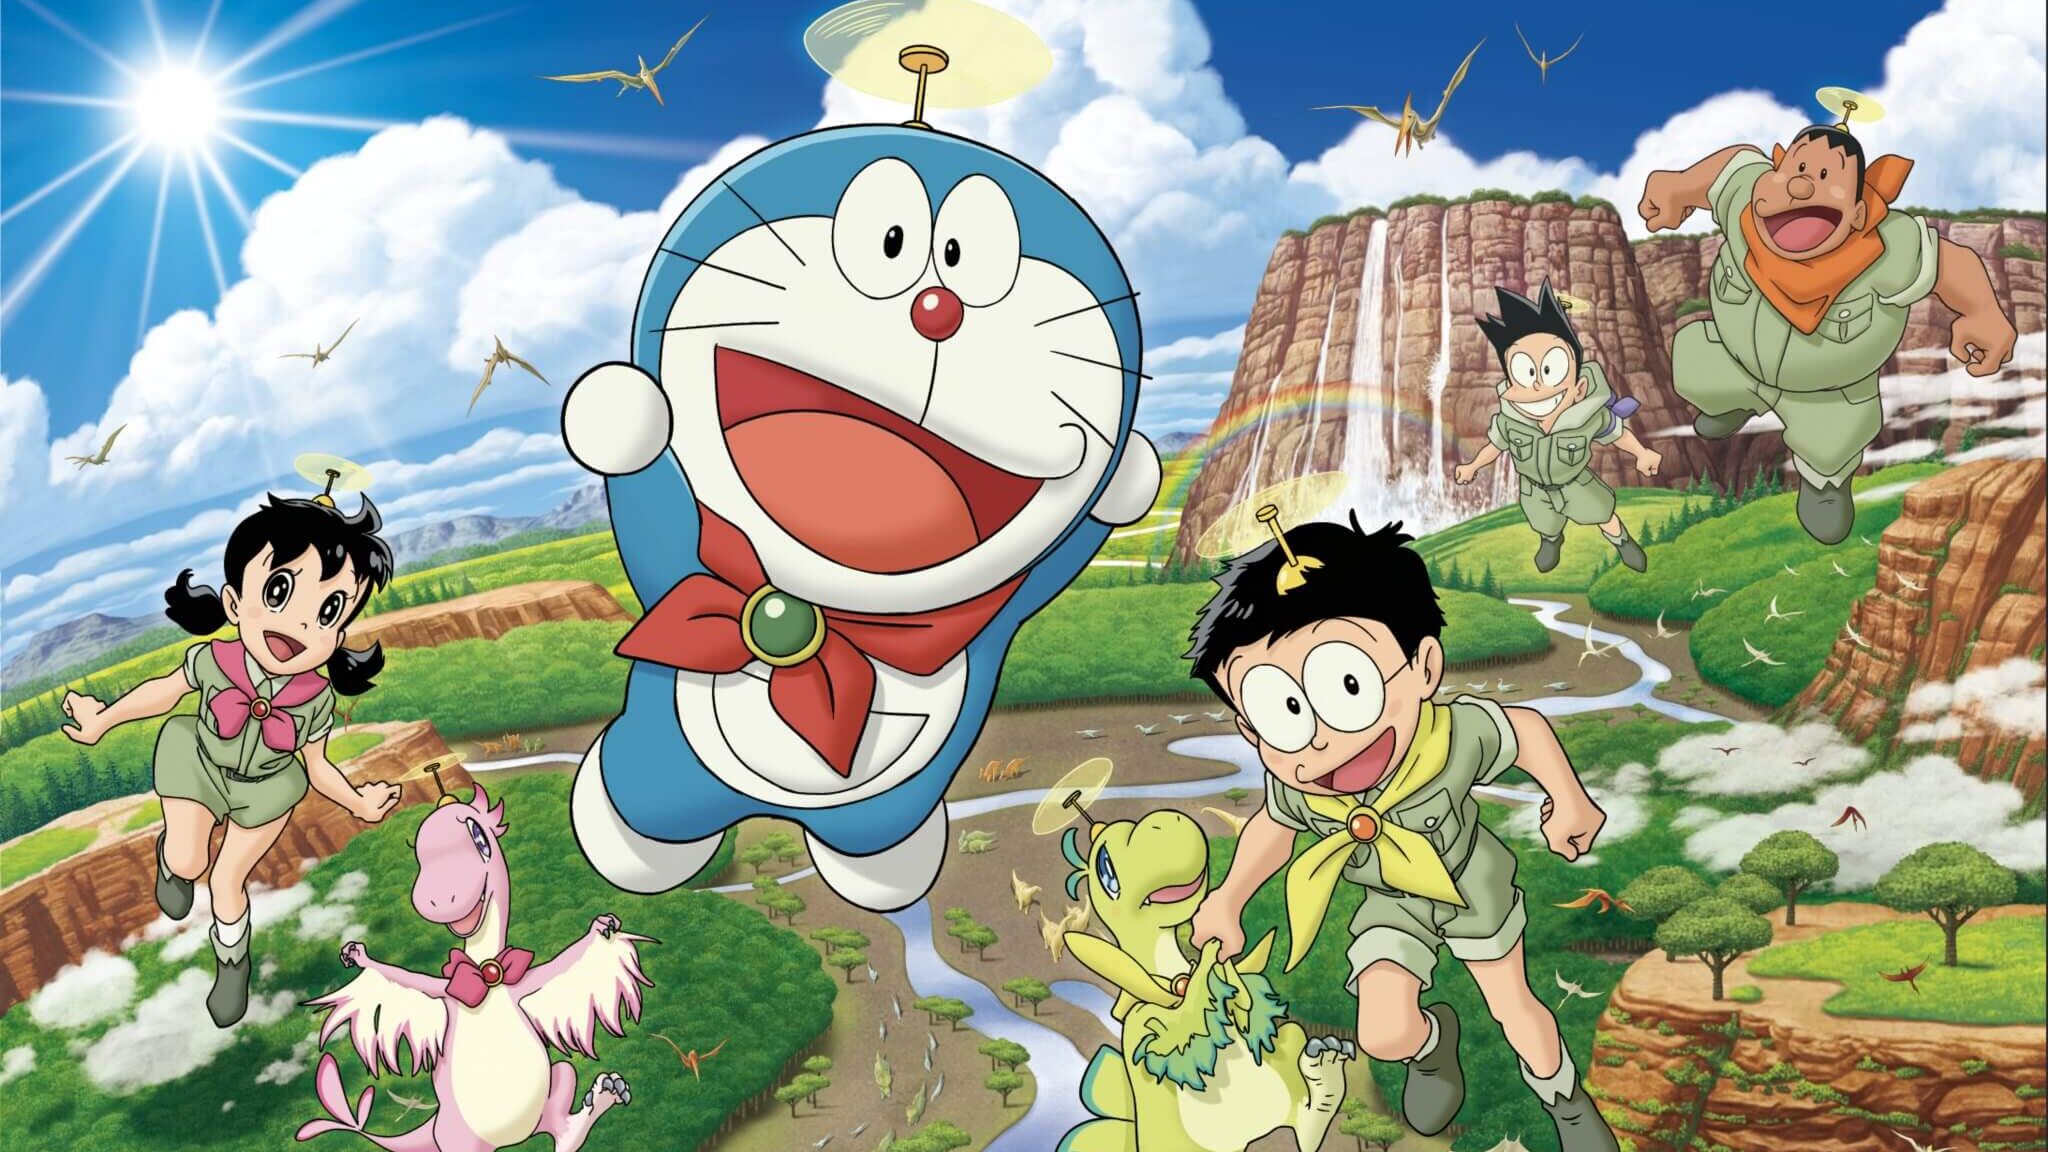 Review nhanh Phim Doraemon: Nobita Và Những Bạn Khủng Long Mới